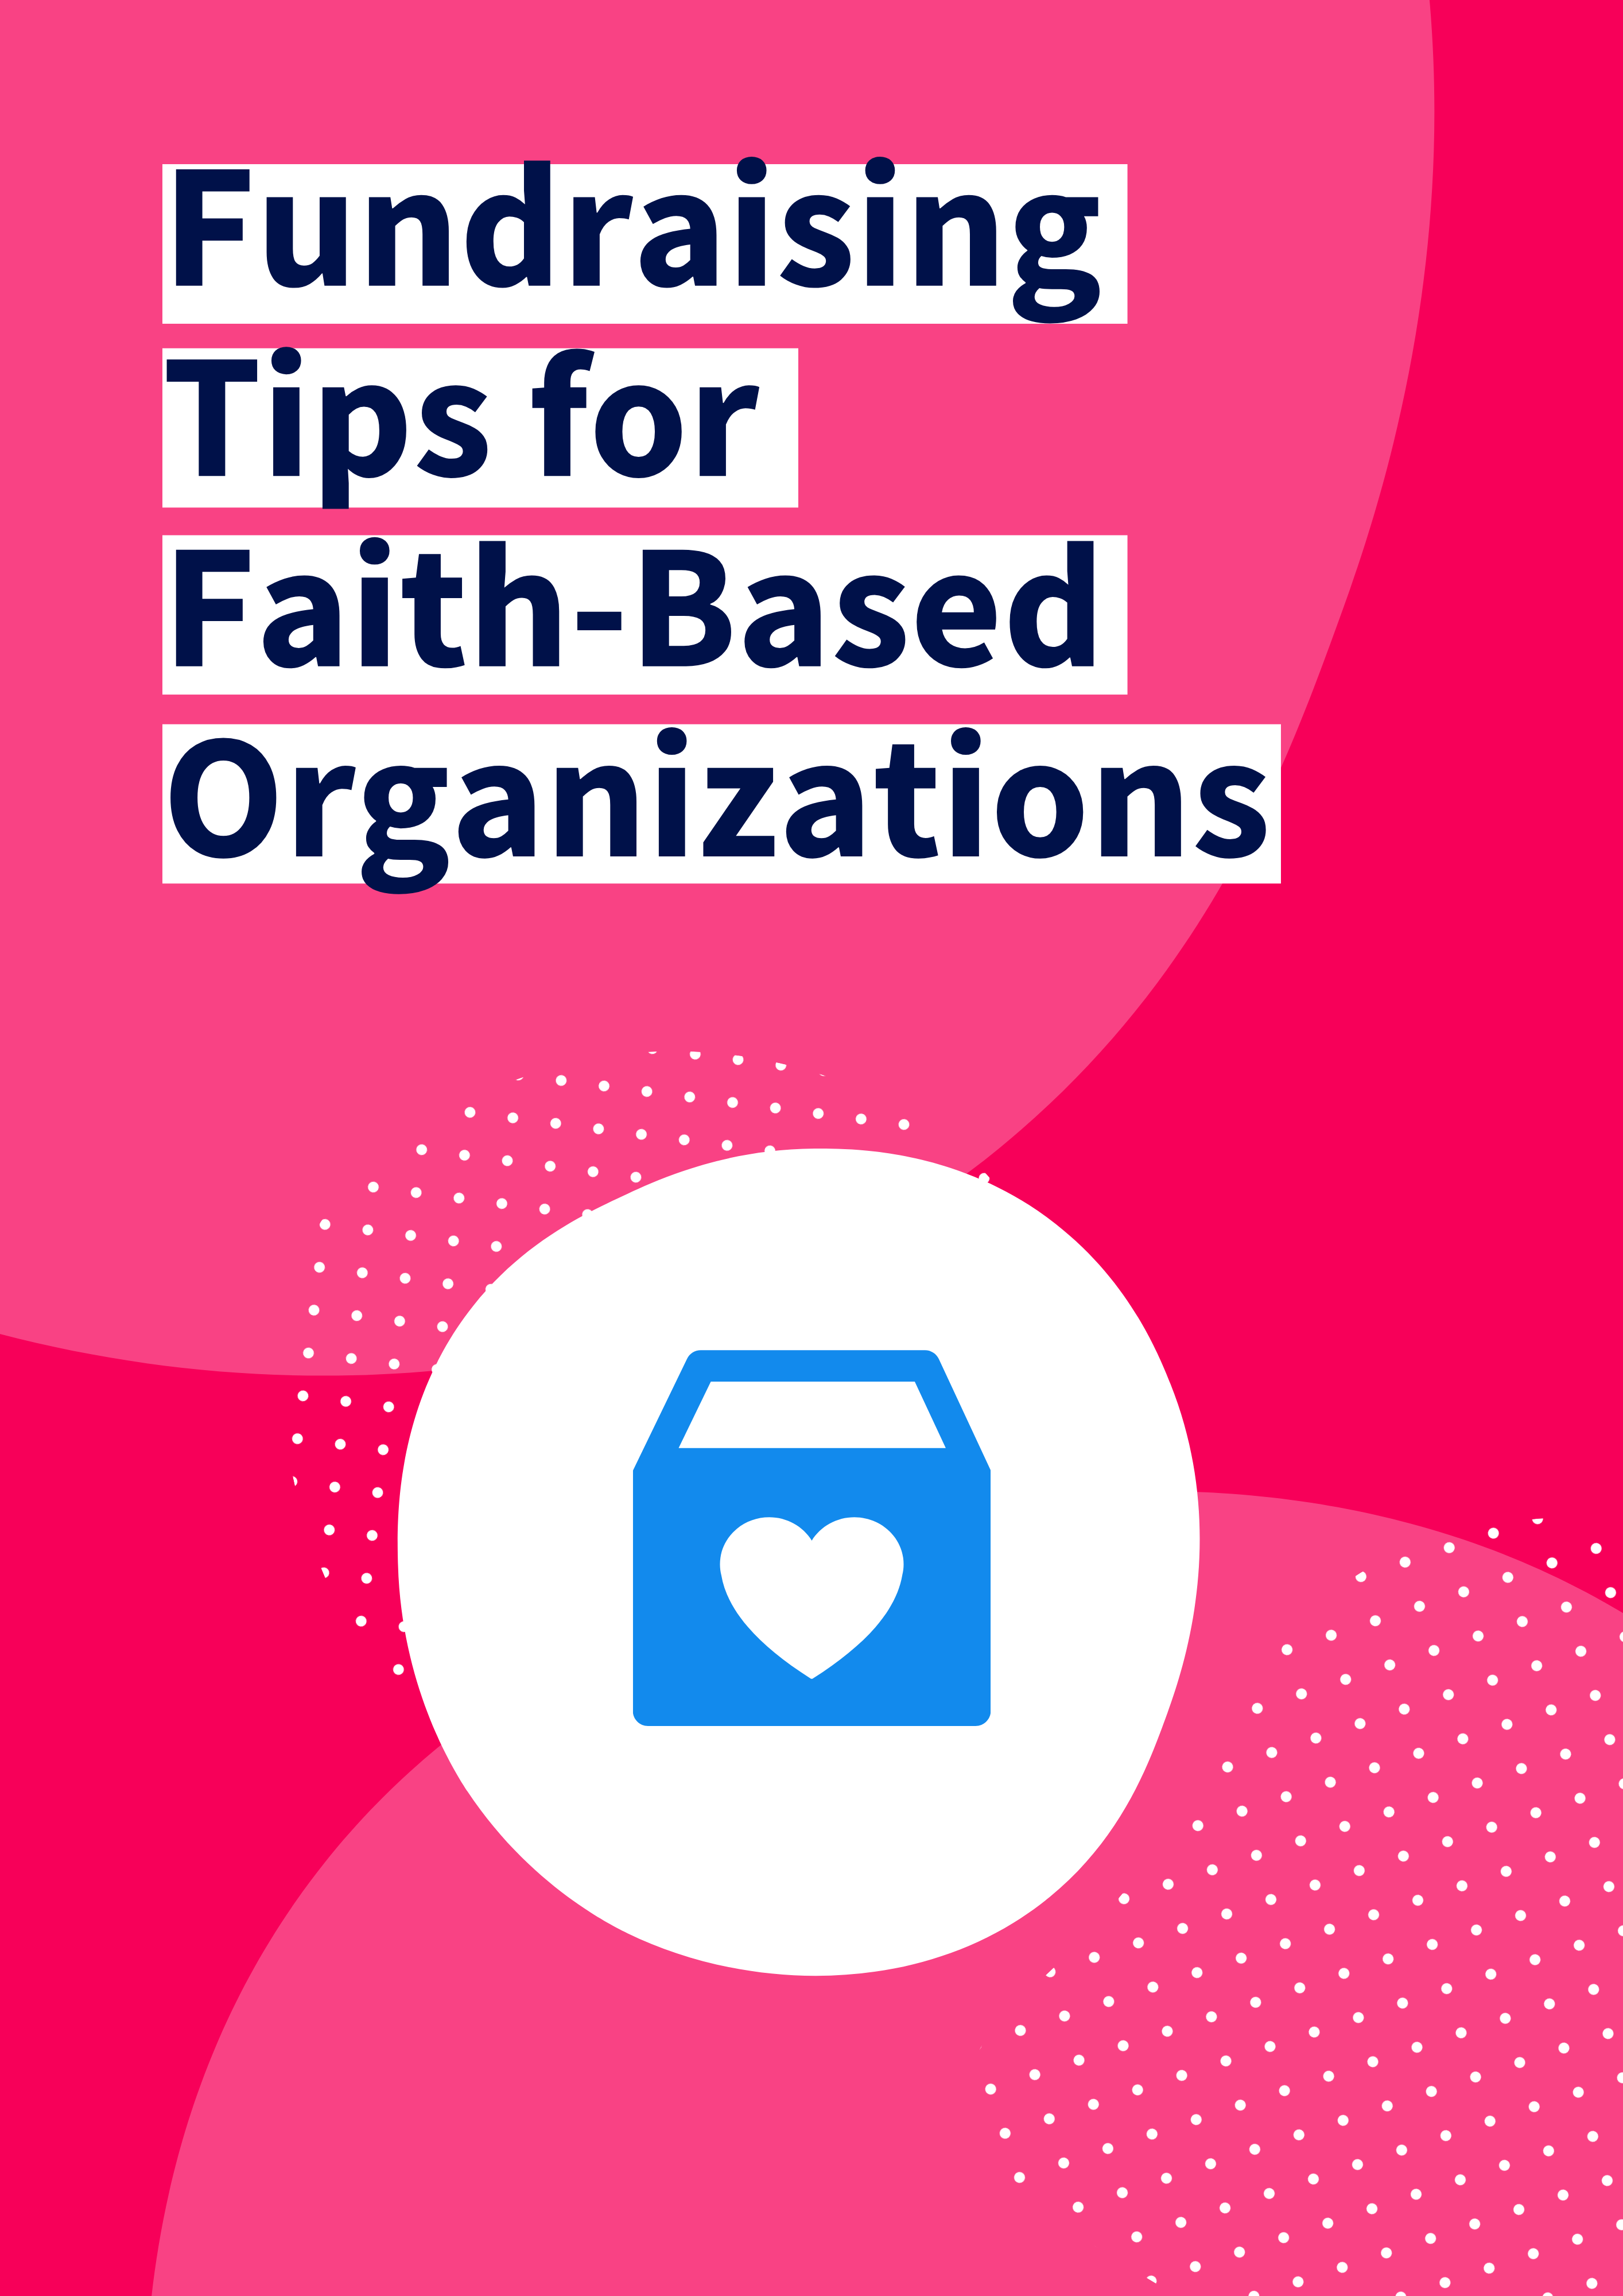 Tips for Faith-Based Organizations